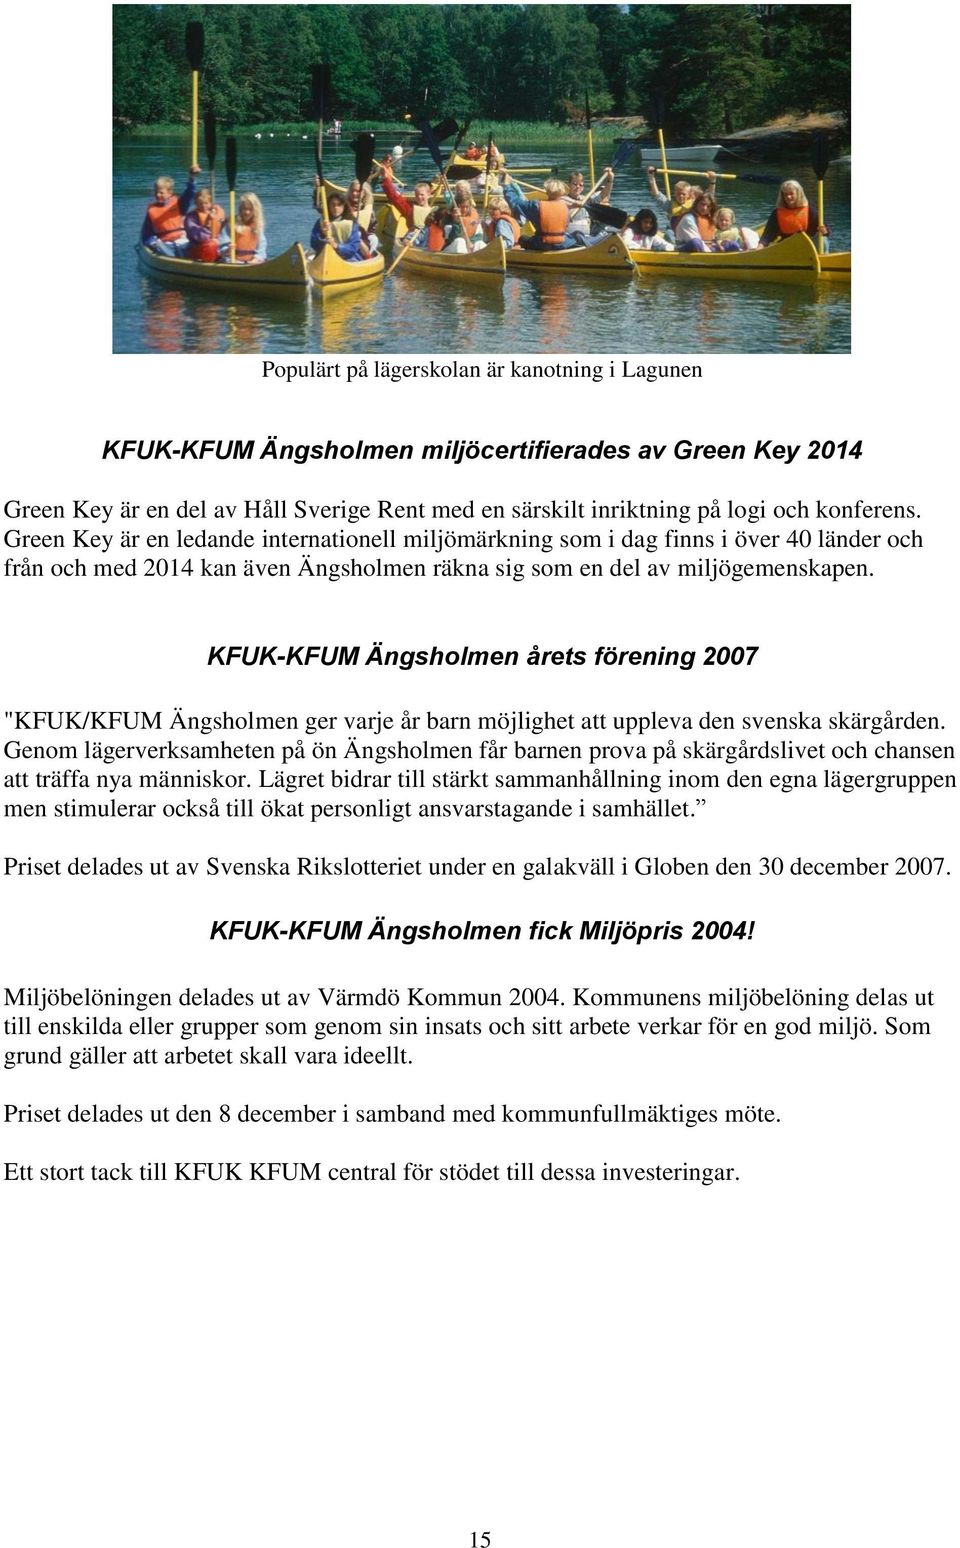 KFUK-KFUM Ängsholmen årets förening 2007 "KFUK/KFUM Ängsholmen ger varje år barn möjlighet att uppleva den svenska skärgården.